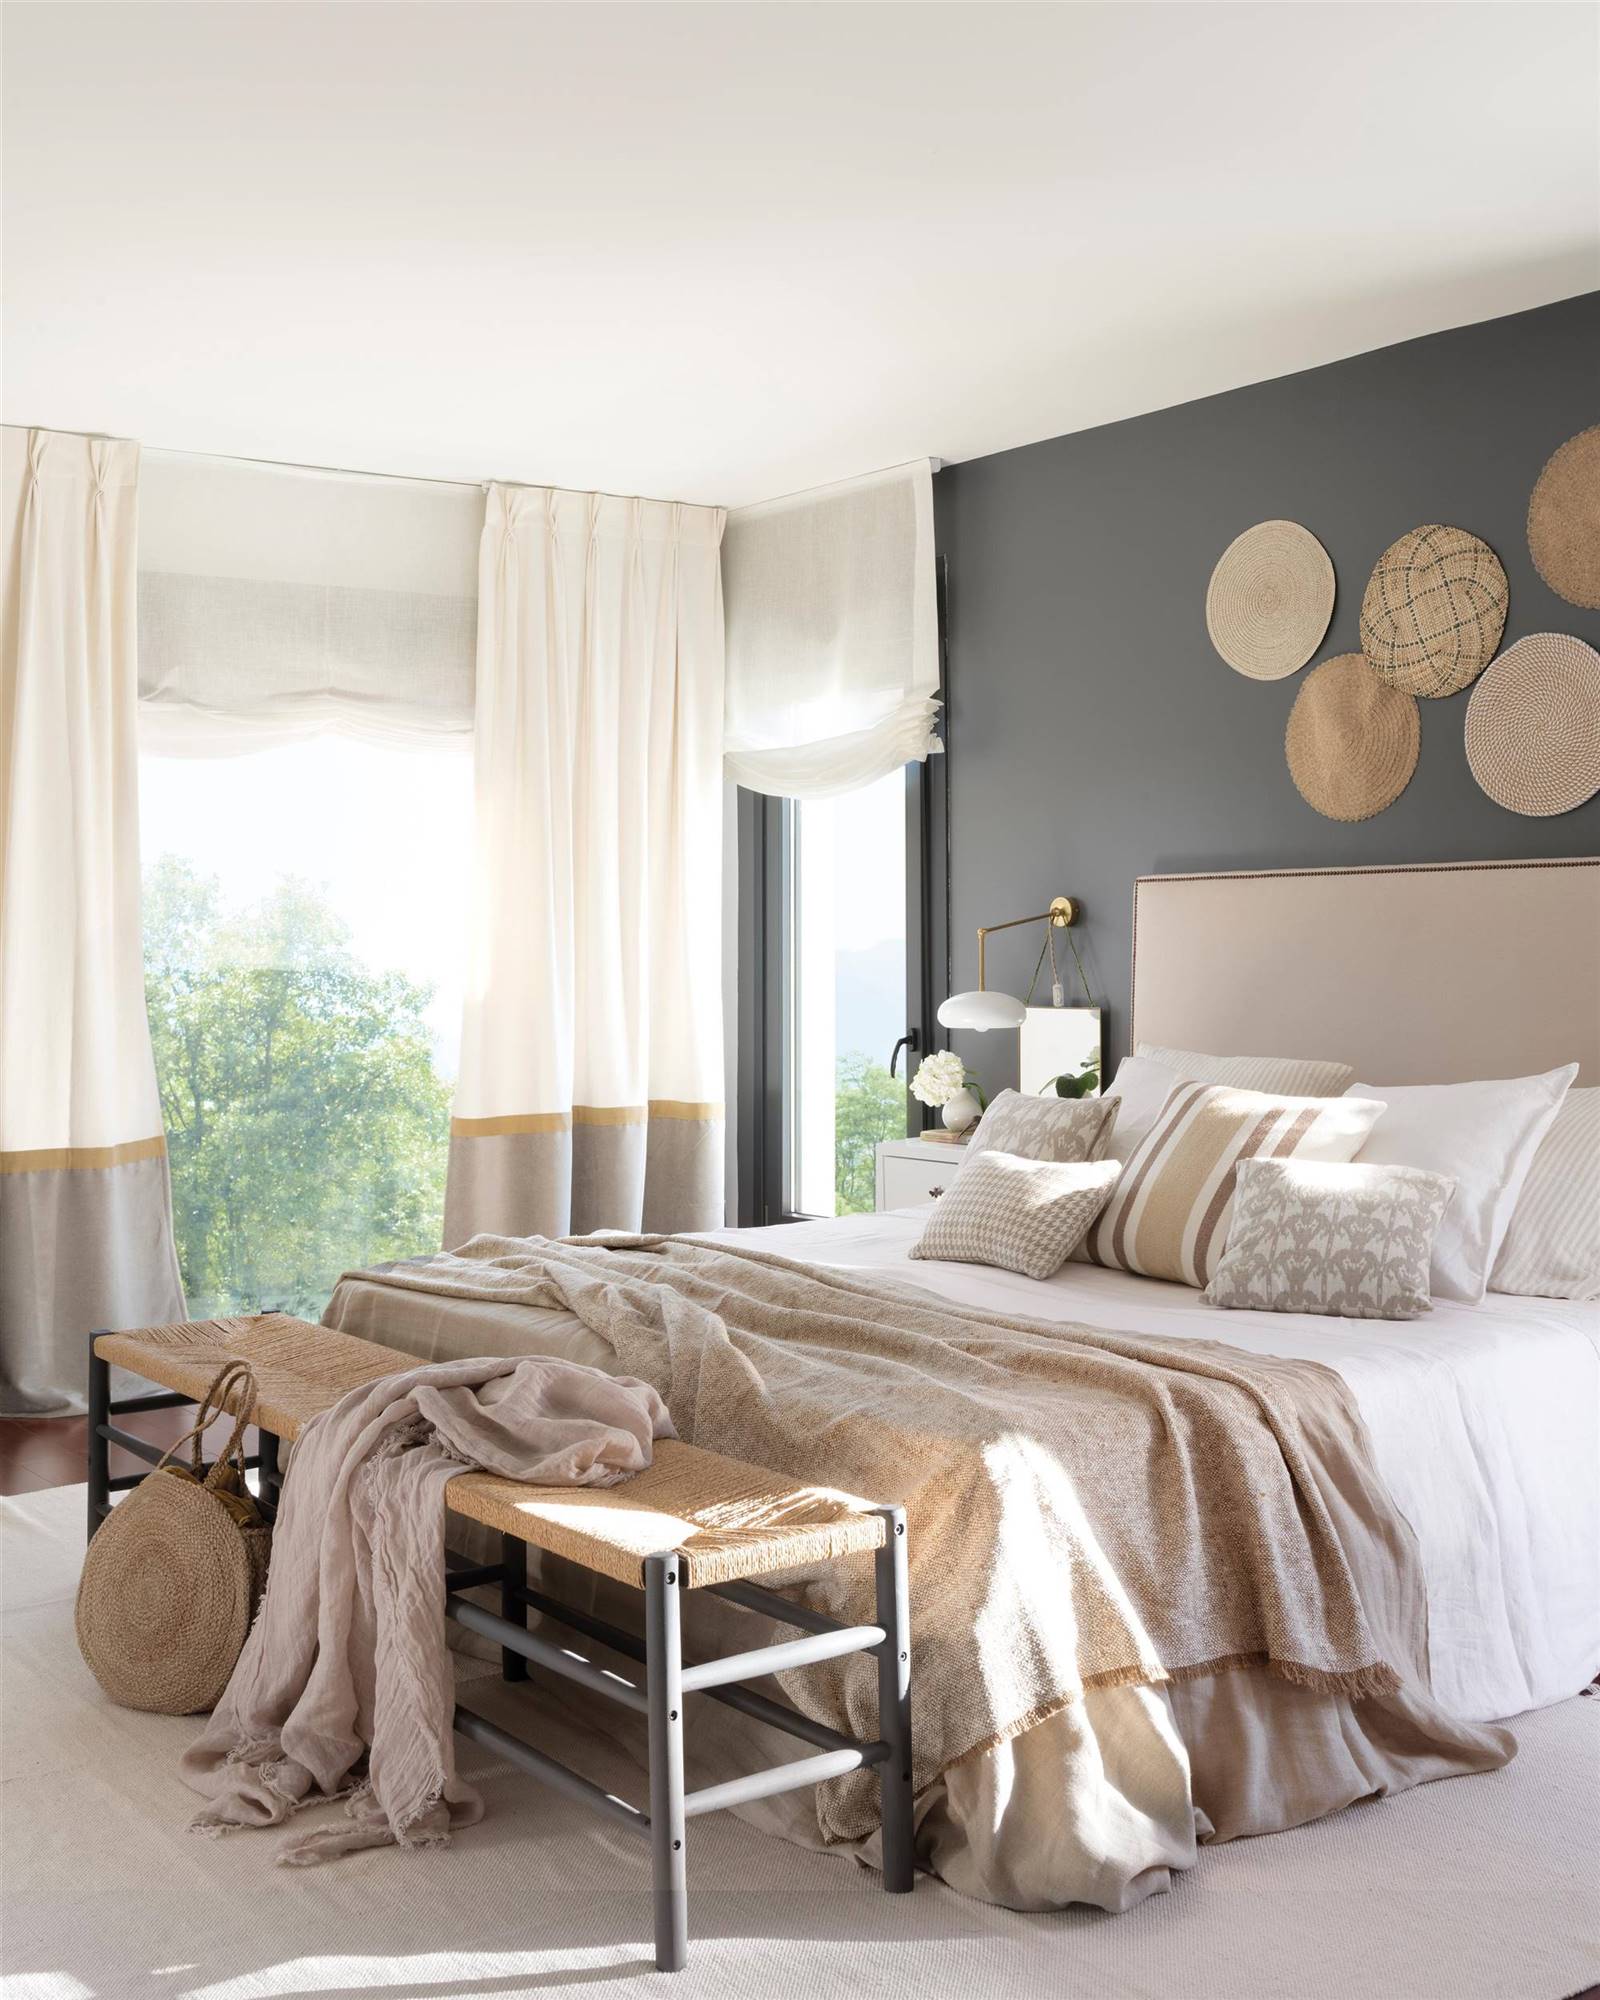 Dormitorio con paredes color gris oscuro, banco y cabecero tapizado.